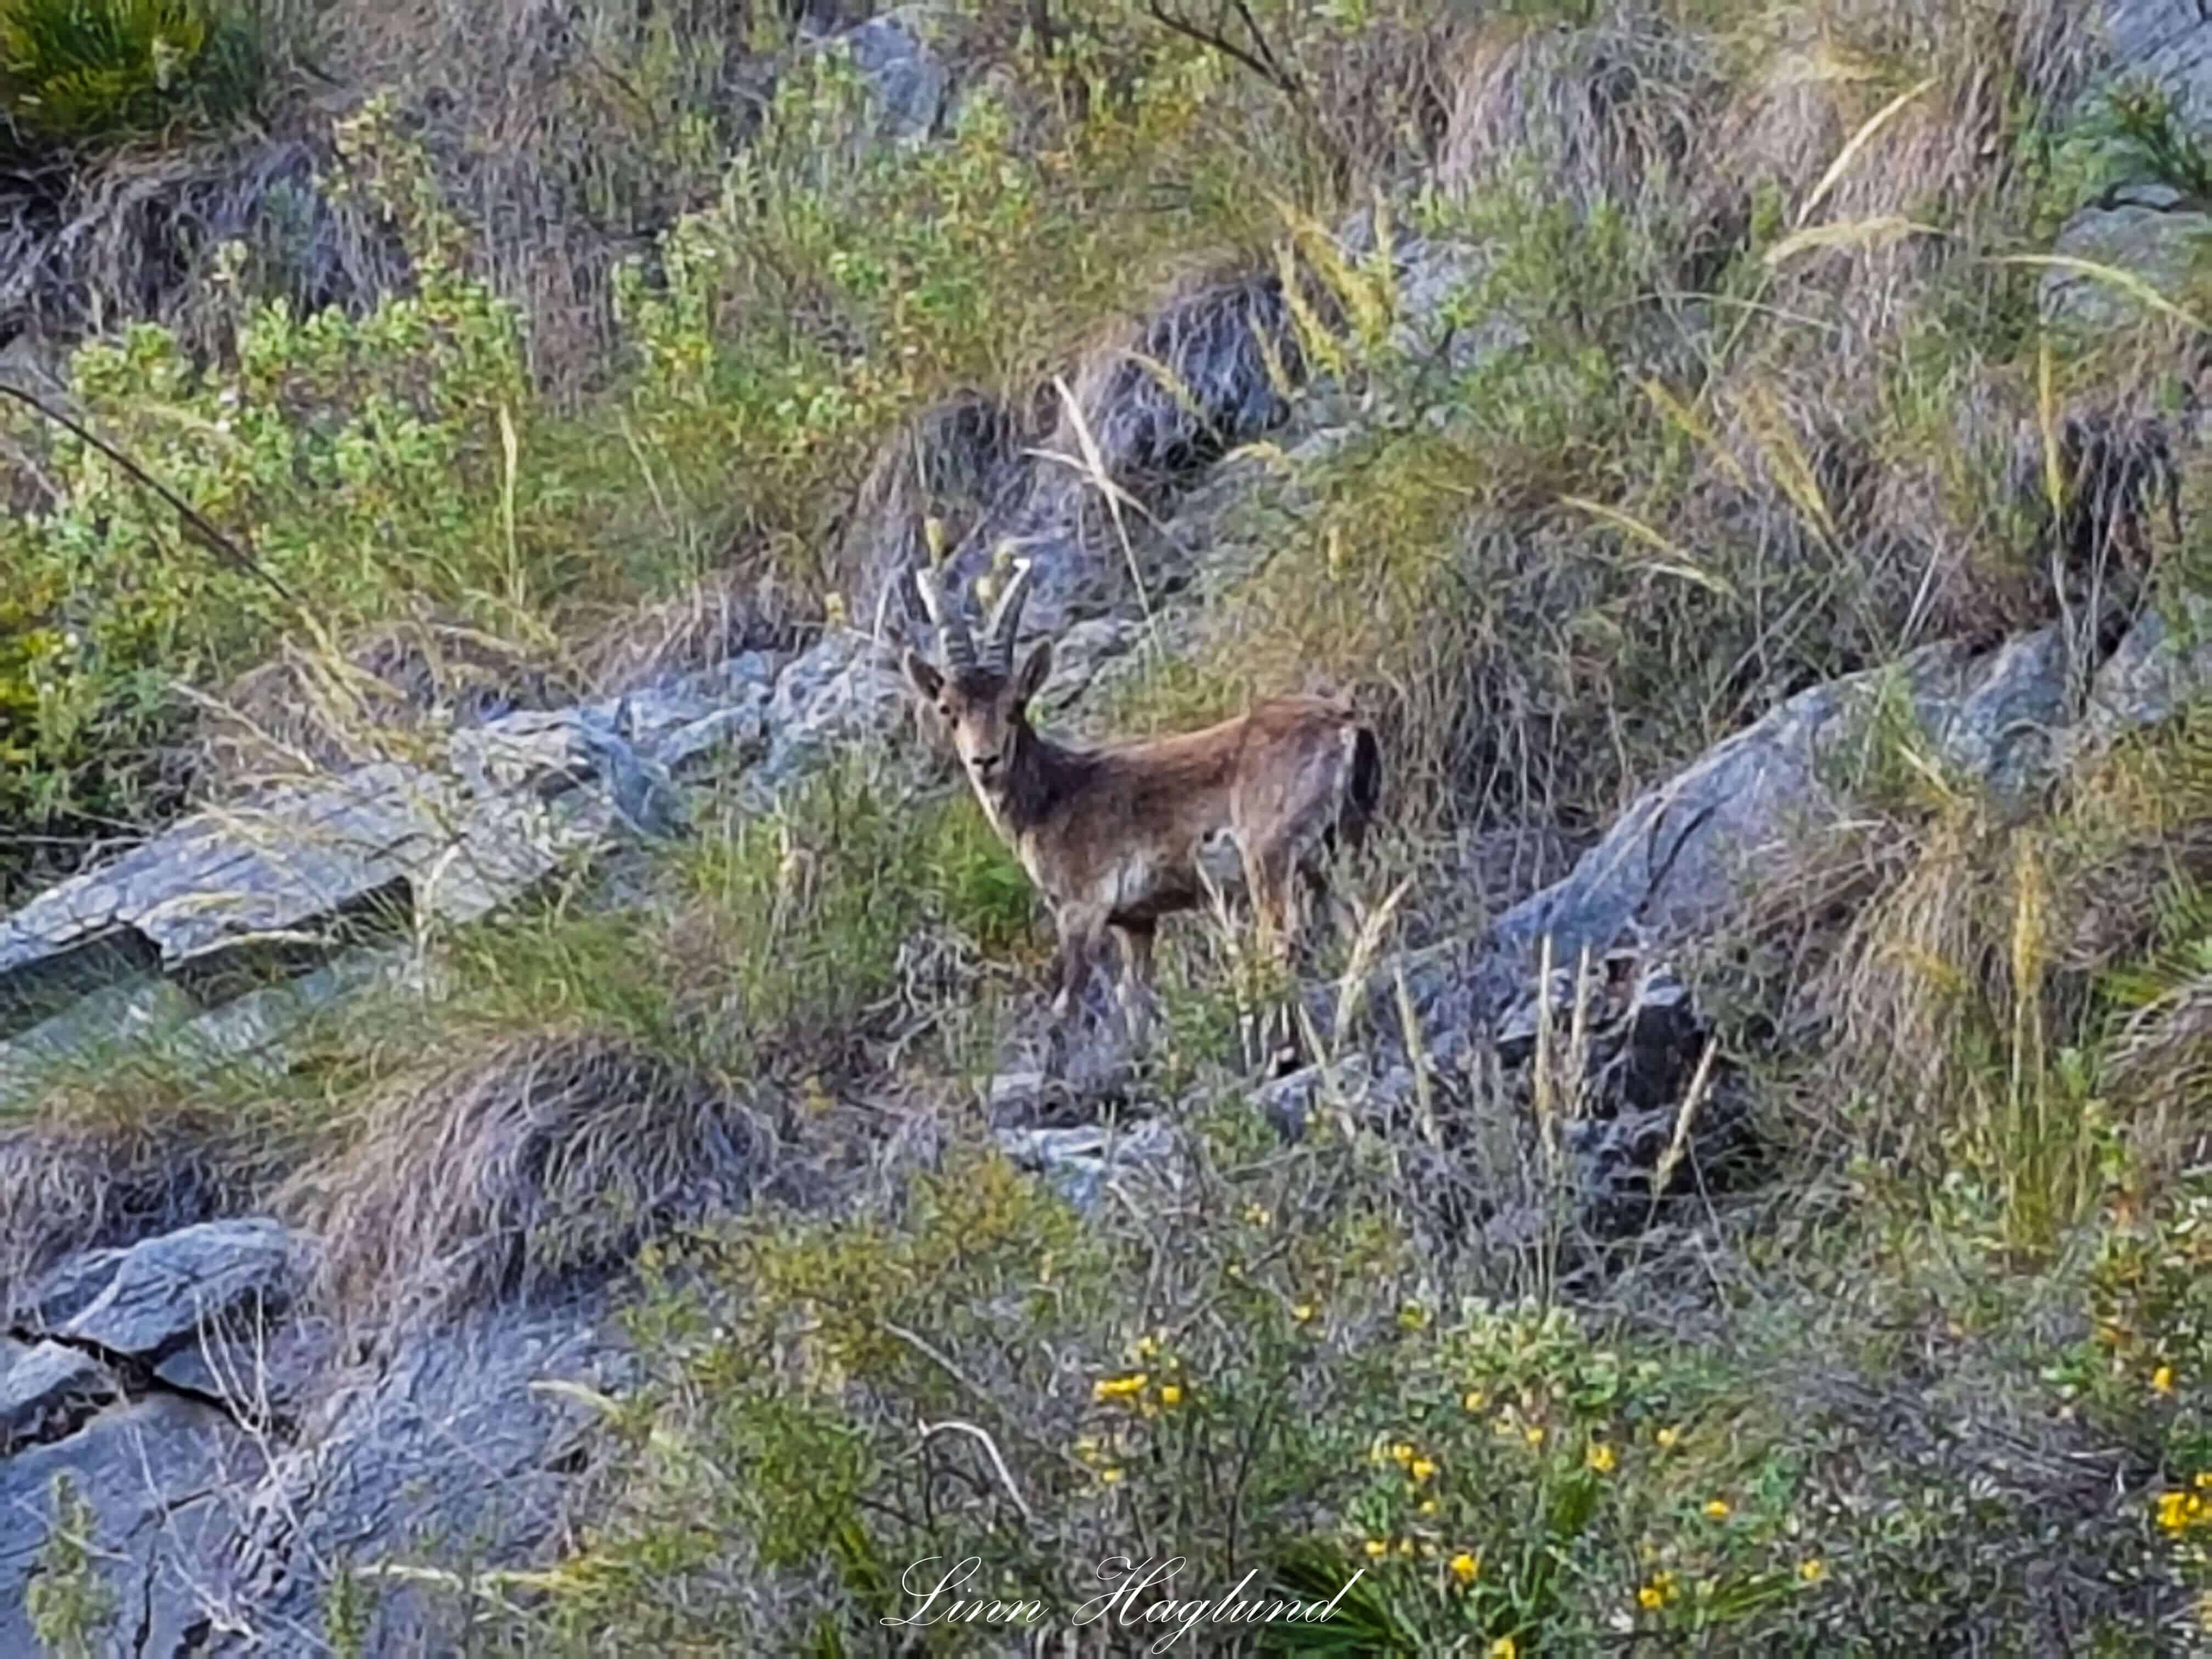 A wild mountain goat at Barranco Blanco